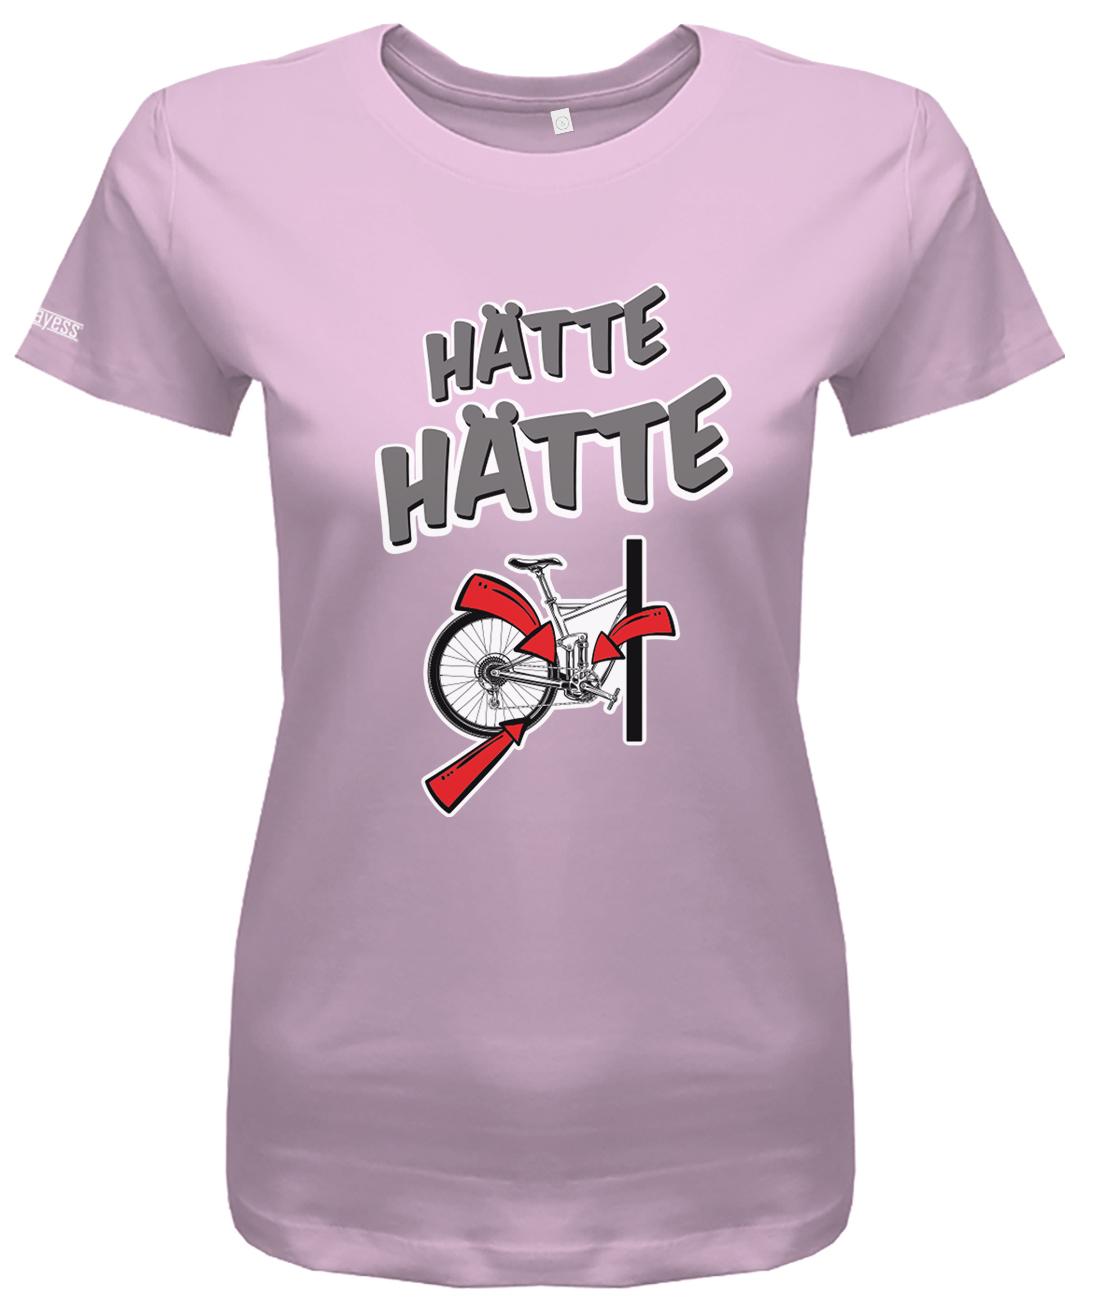 haette-haette-fahrradkette-damen-shirt-rosa